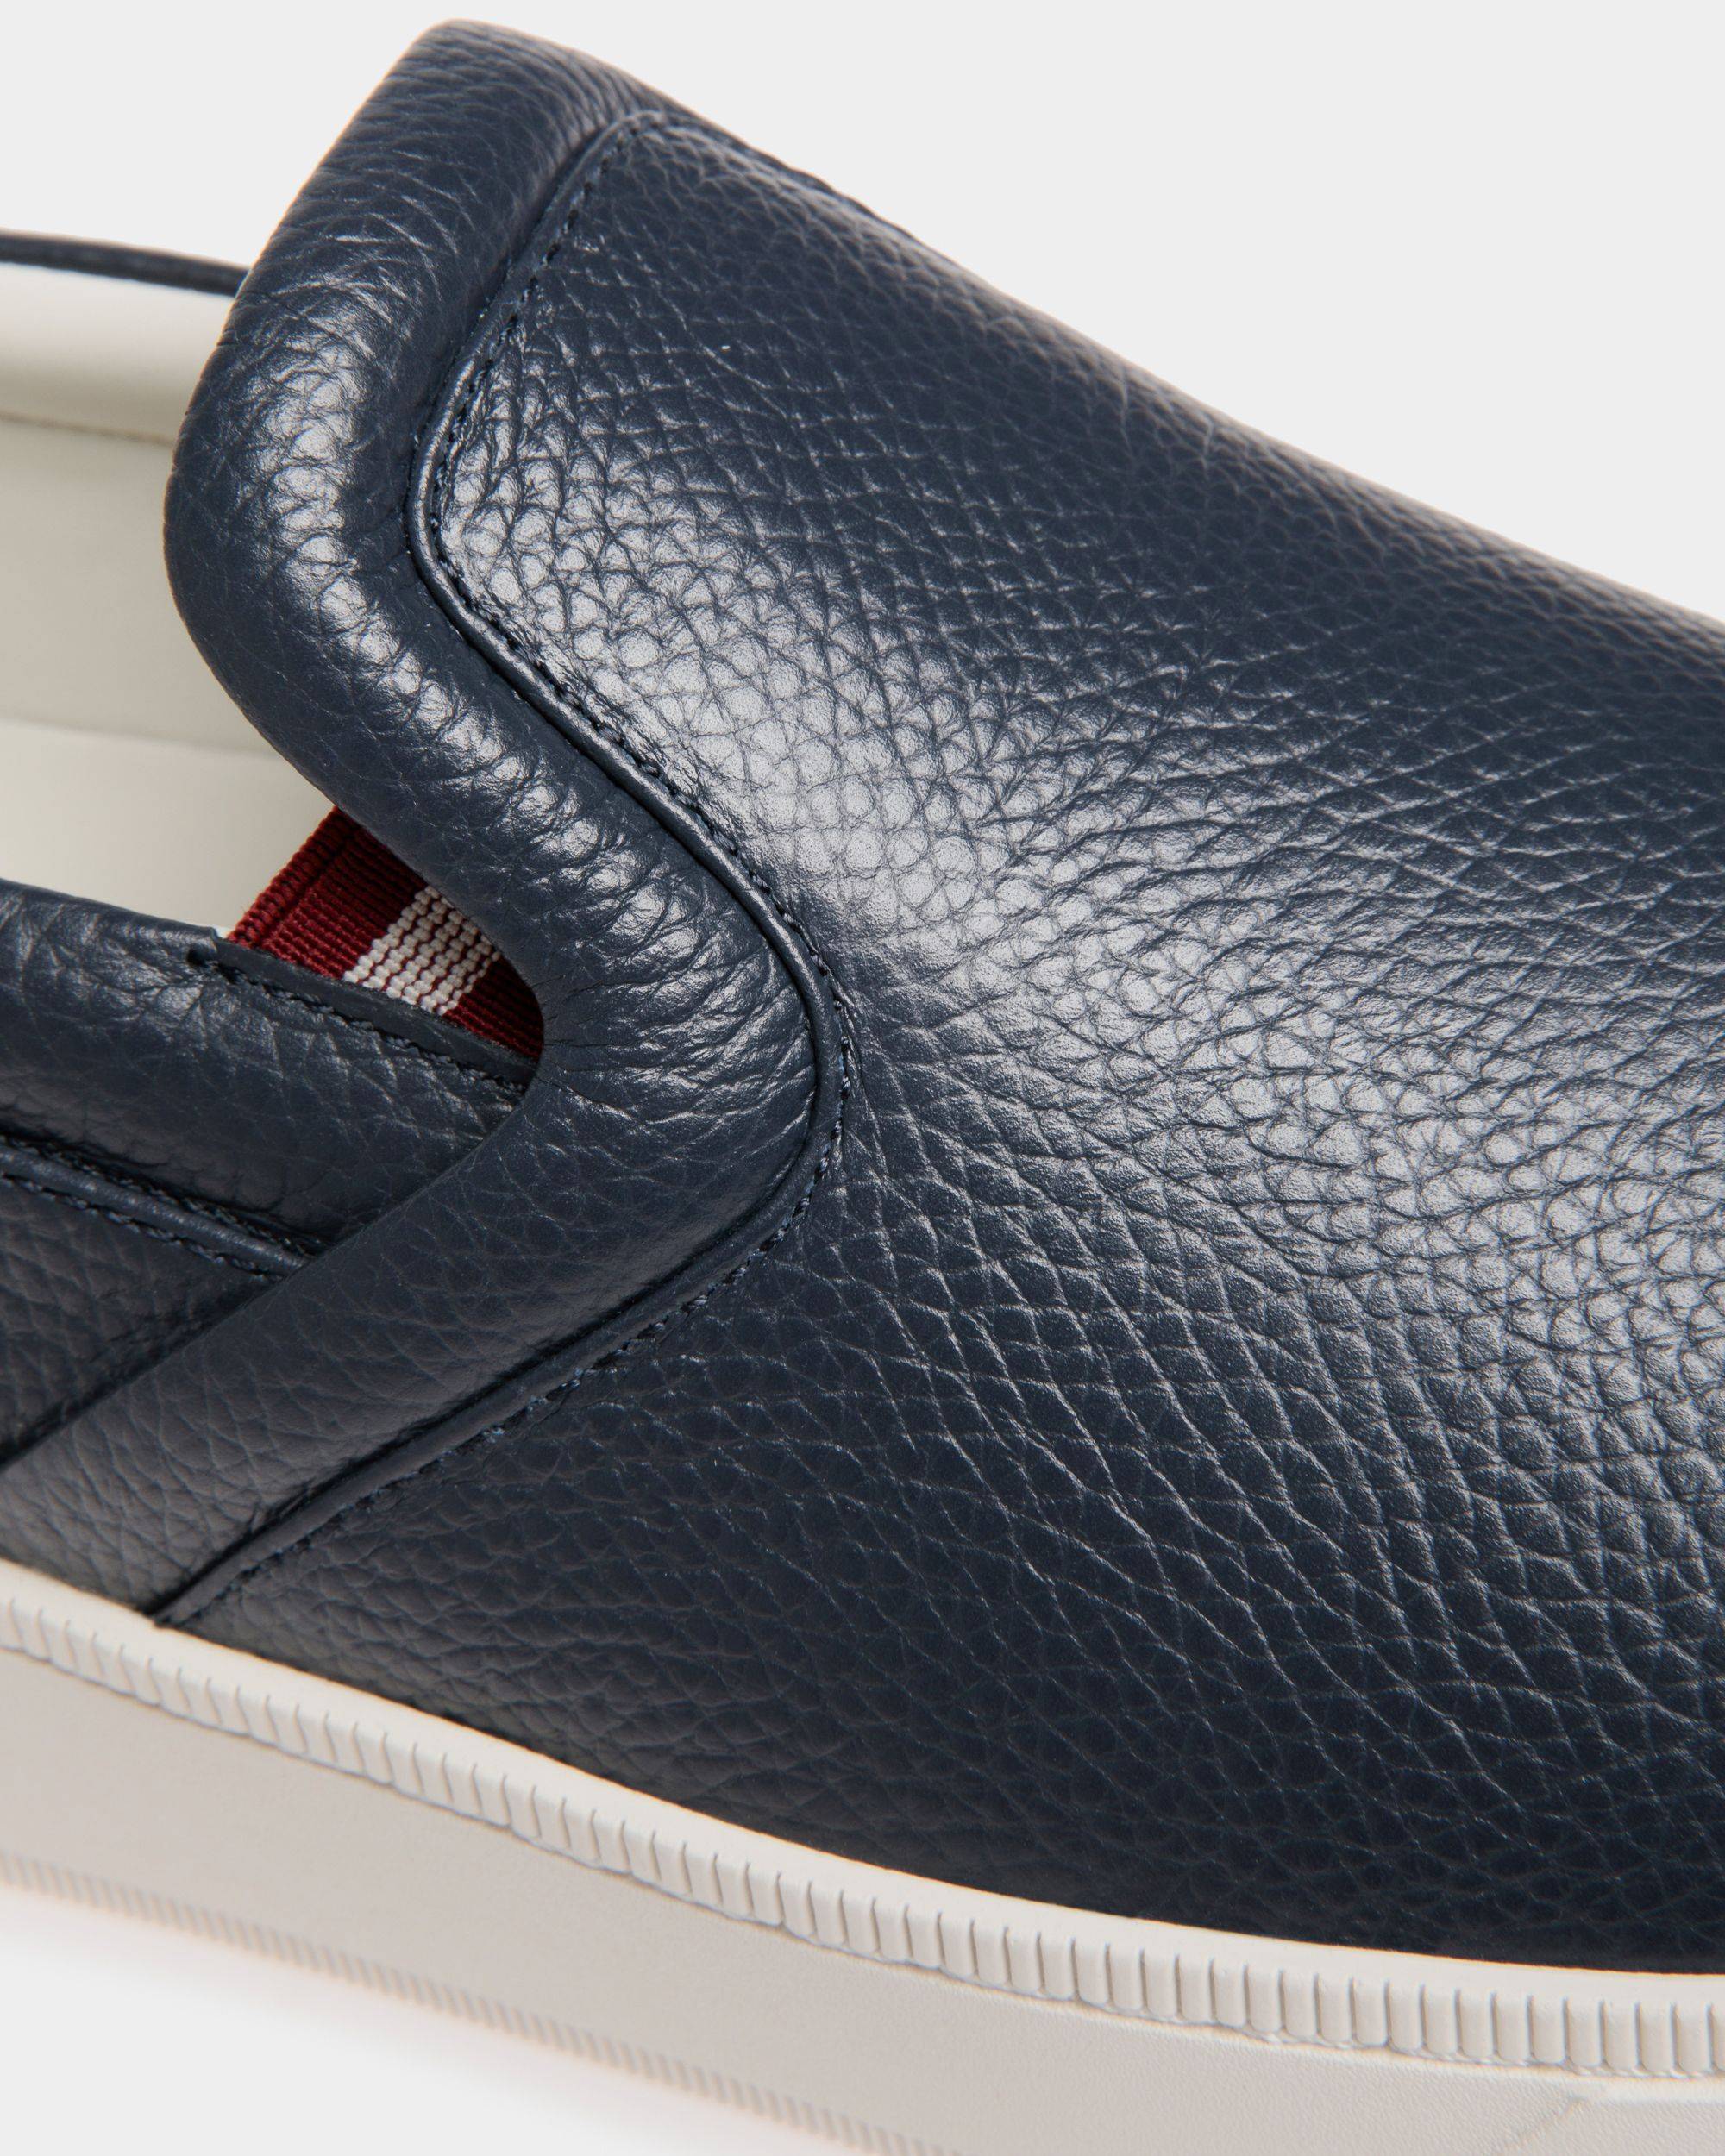 Raise | Men's Slip-On Sneaker in Blue Grained Leather | Bally | Still Life Detail